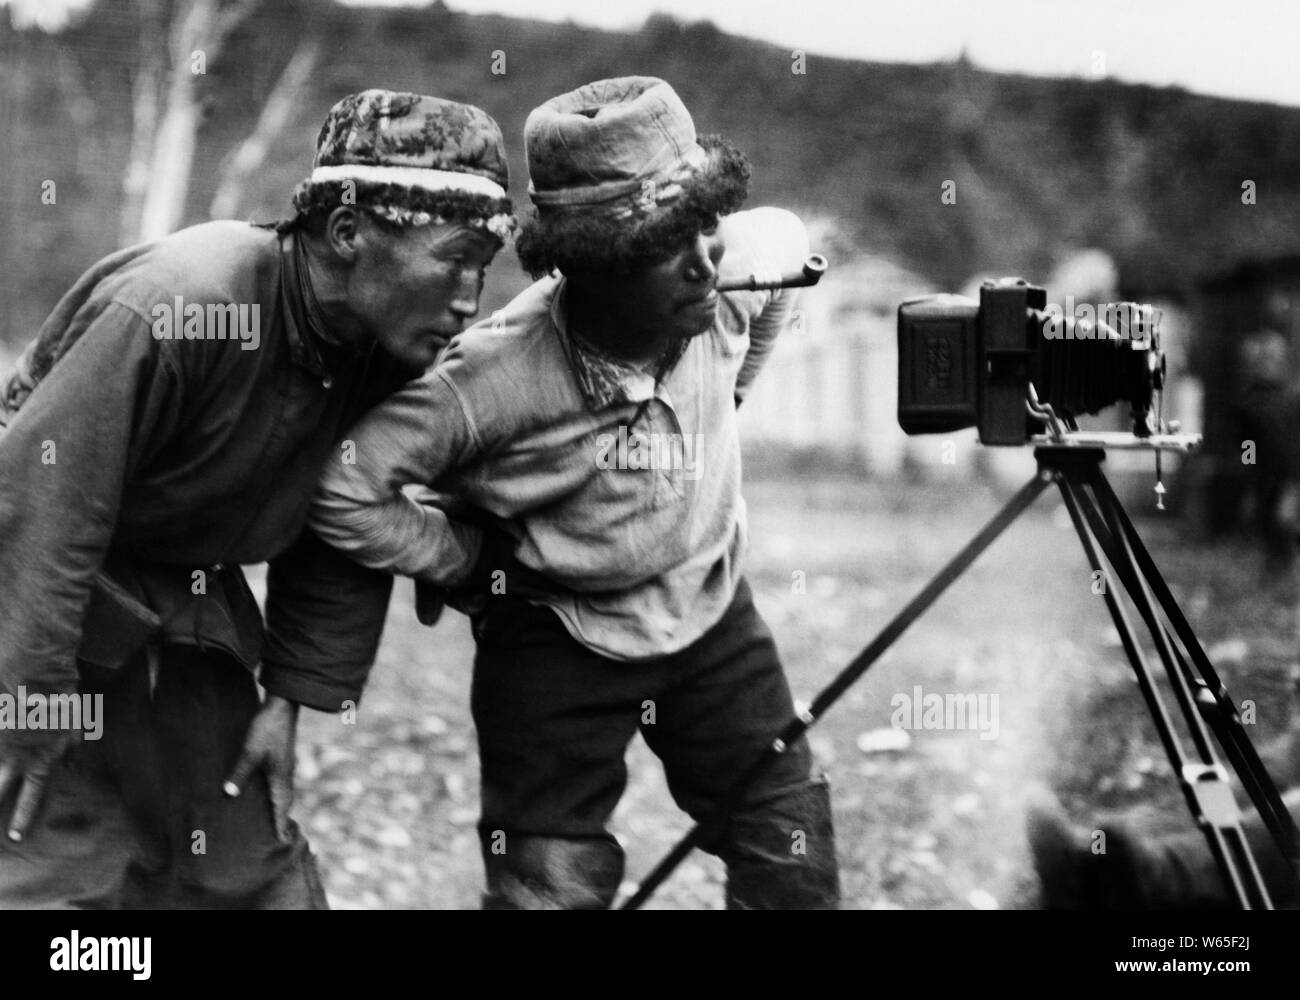 Zwei Oiraten, fasziniert von der Kamera, 1920-30 Stockfoto